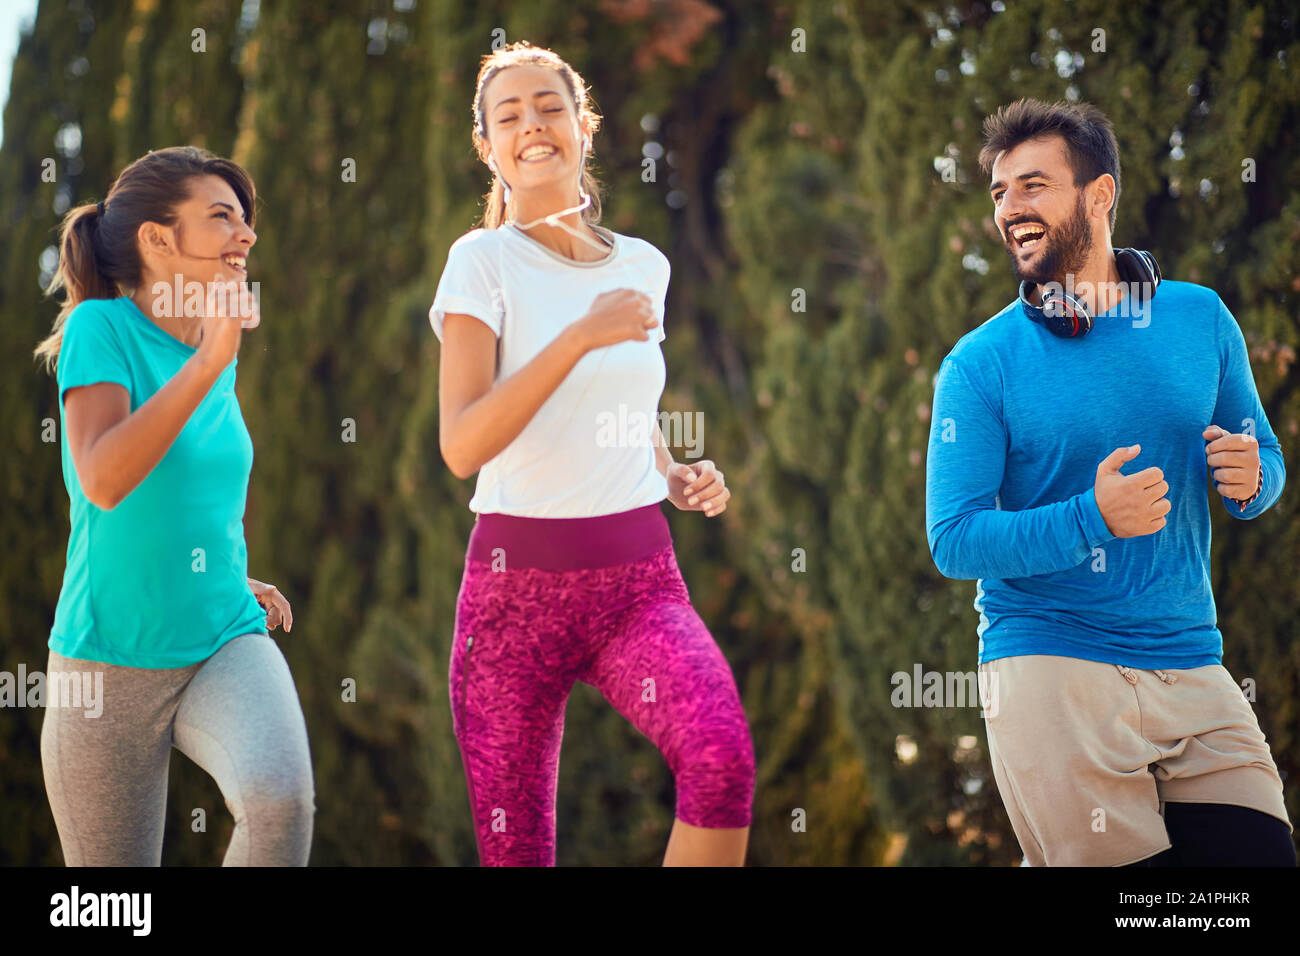 Junge Sport Freunde zusammen laufen im Freien leben Aktiv gesund Lifestyle. Stockfoto